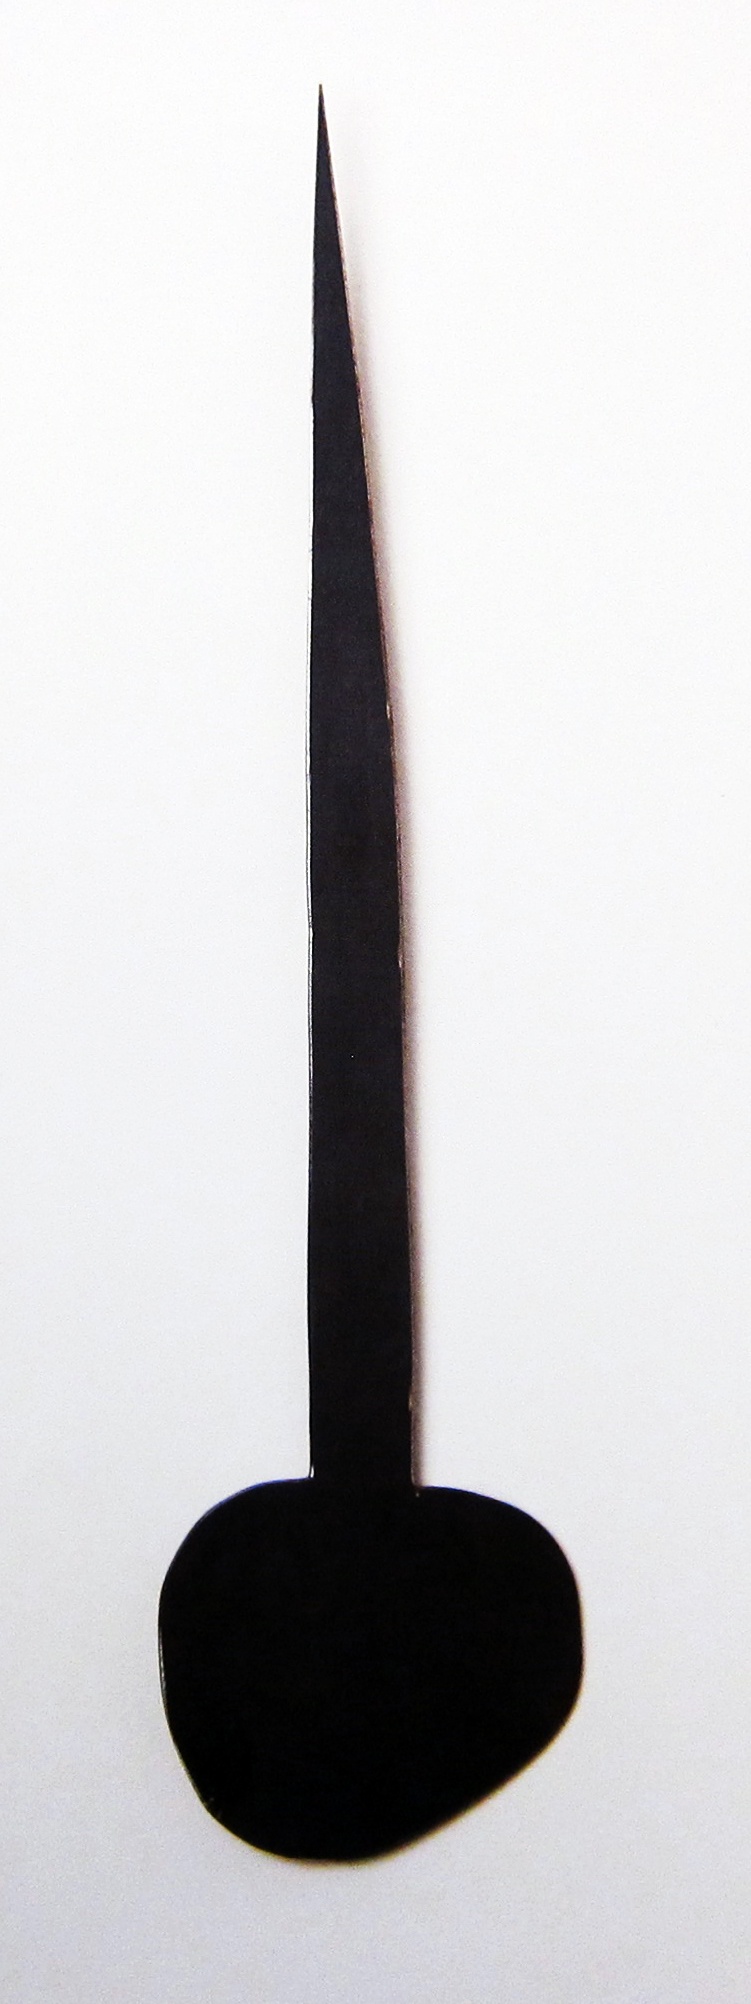 Fausto [objeto], 2013. ferro encerado. 50 x 10 cm 